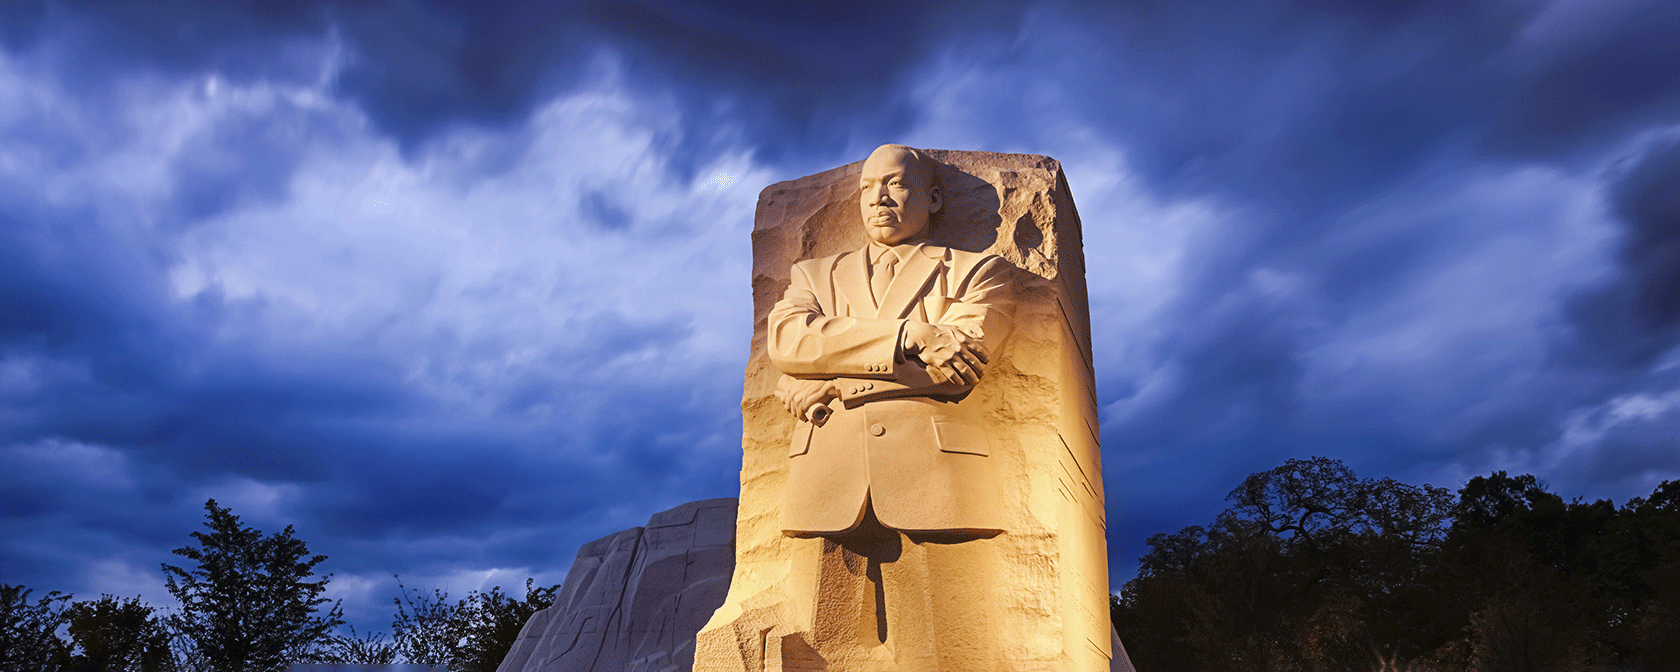 밤에 마틴 루터 킹 주니어 기념관